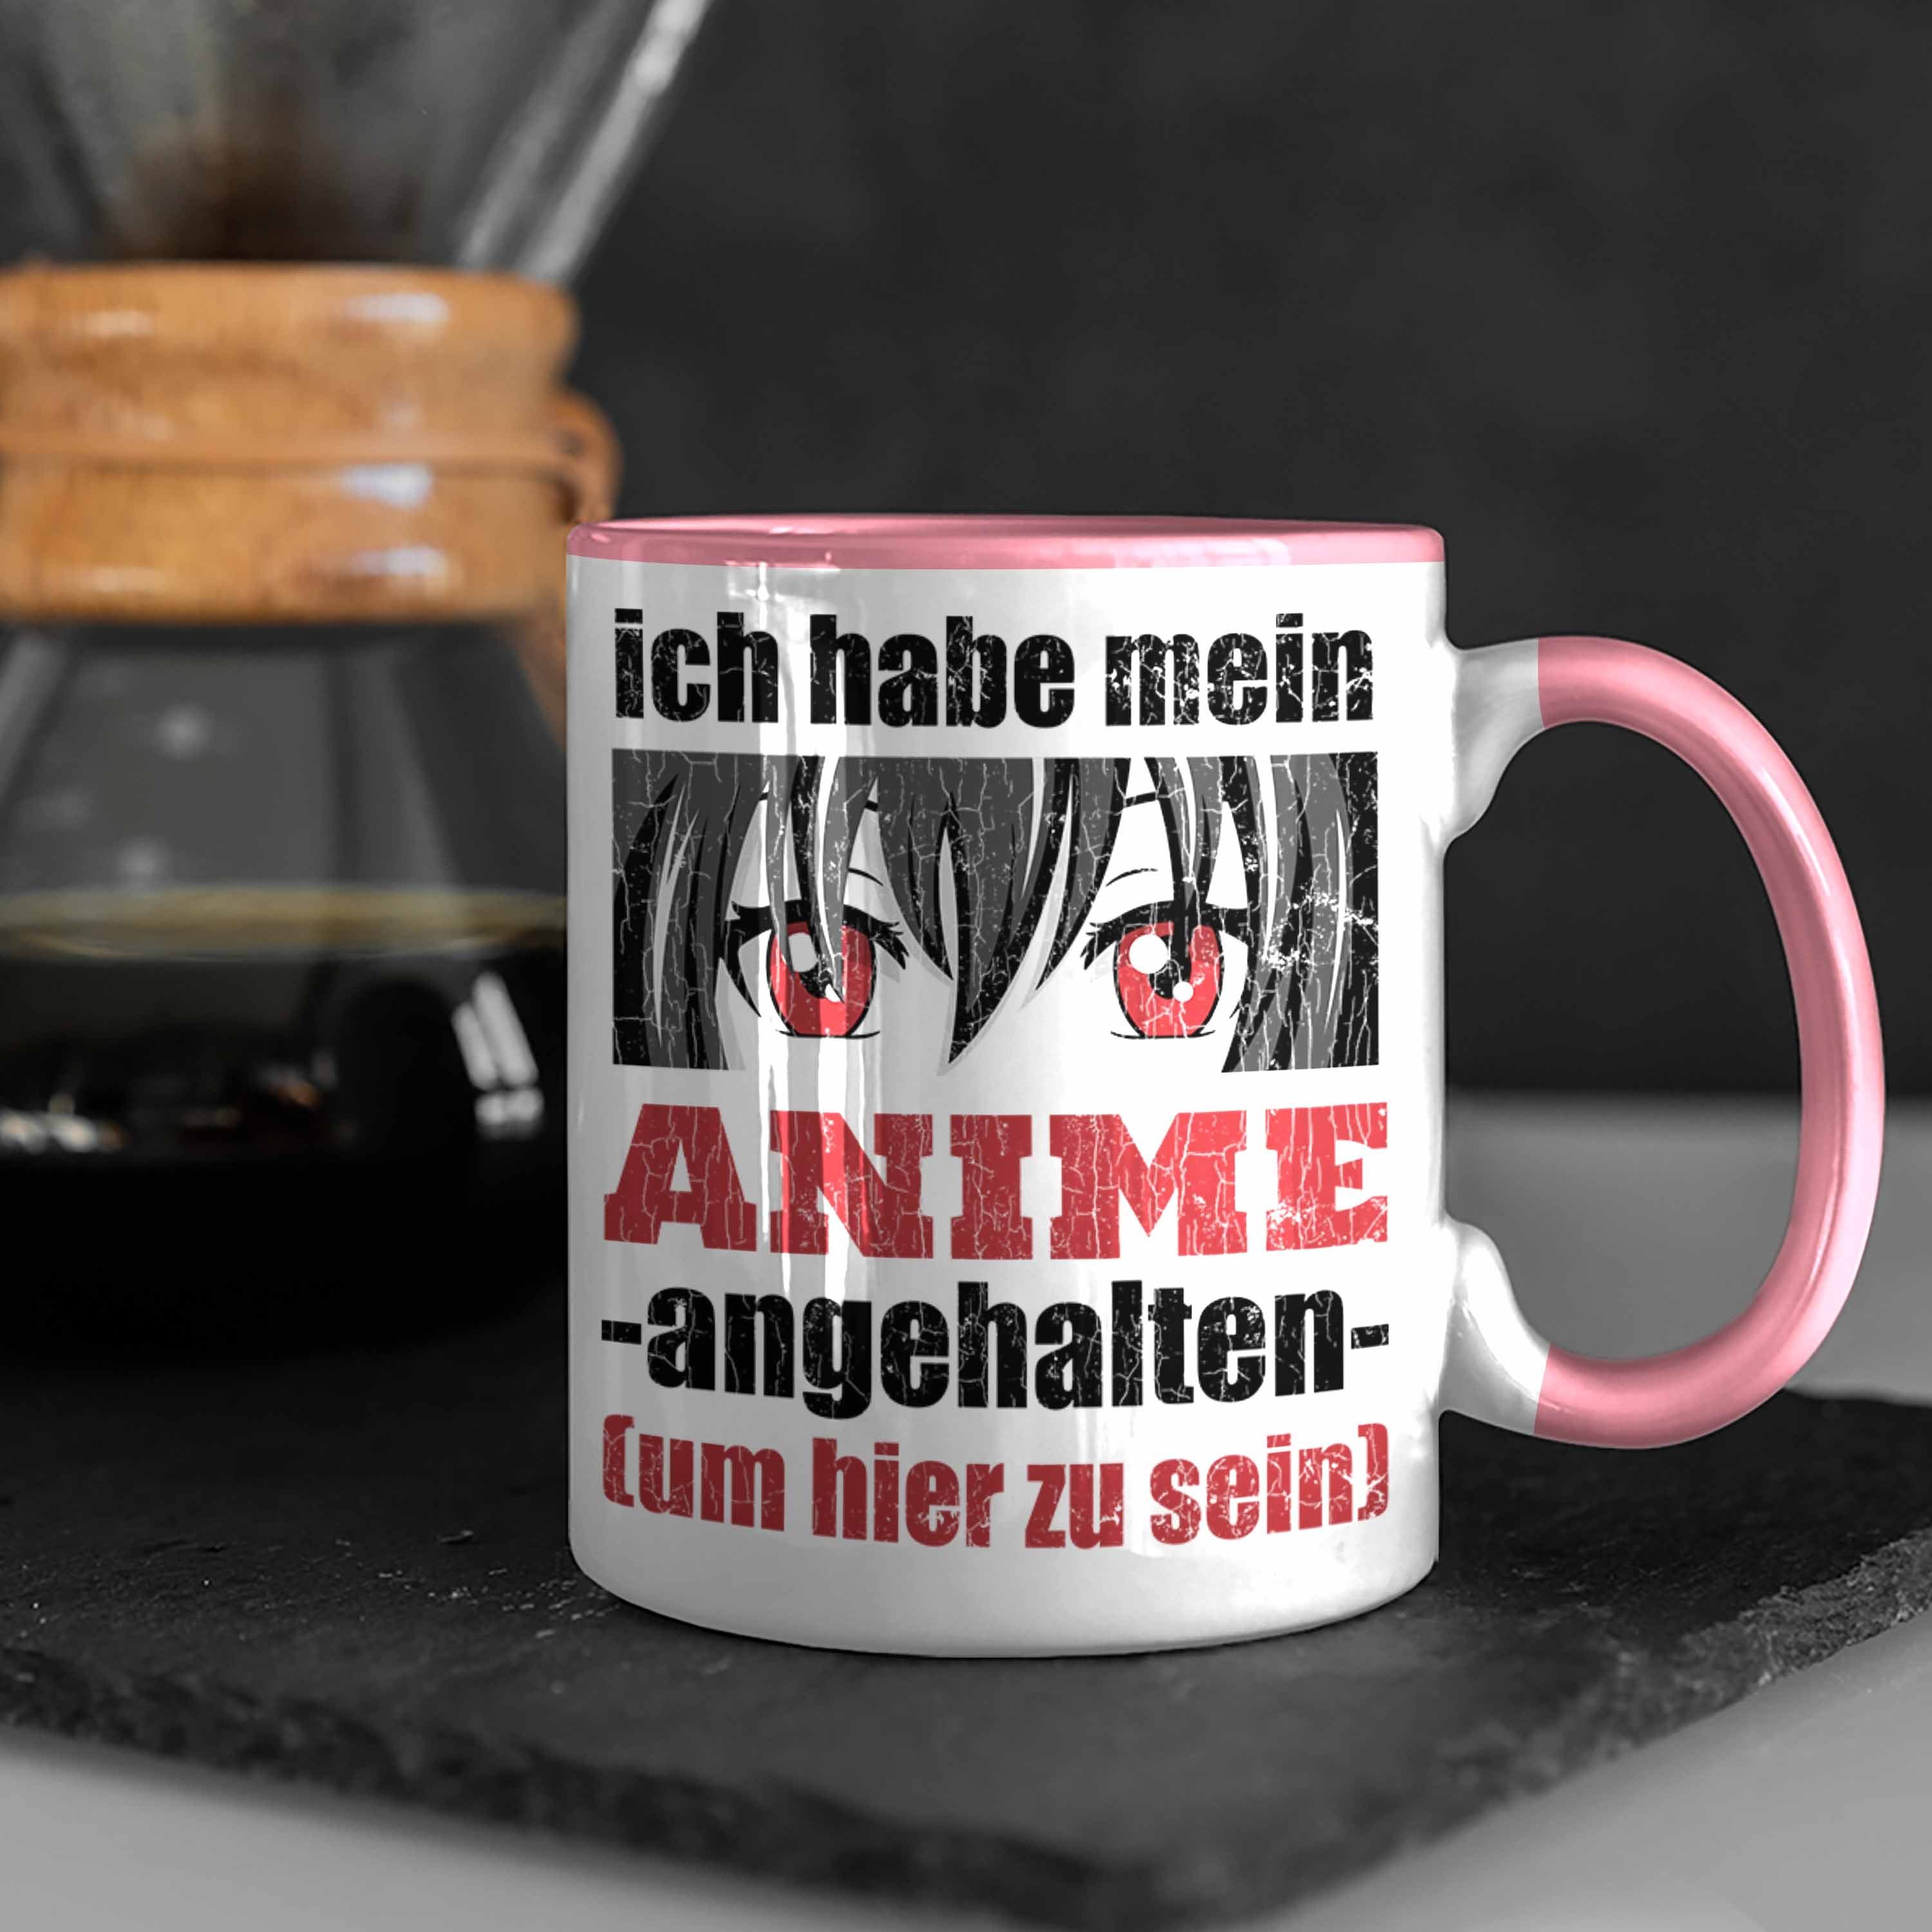 - Anme Trendation Geschenke Rosa Spruch Deko Tasse Fan Sprüche Anime Spruch Trendation Geschenk Tasse Kaffeetasse